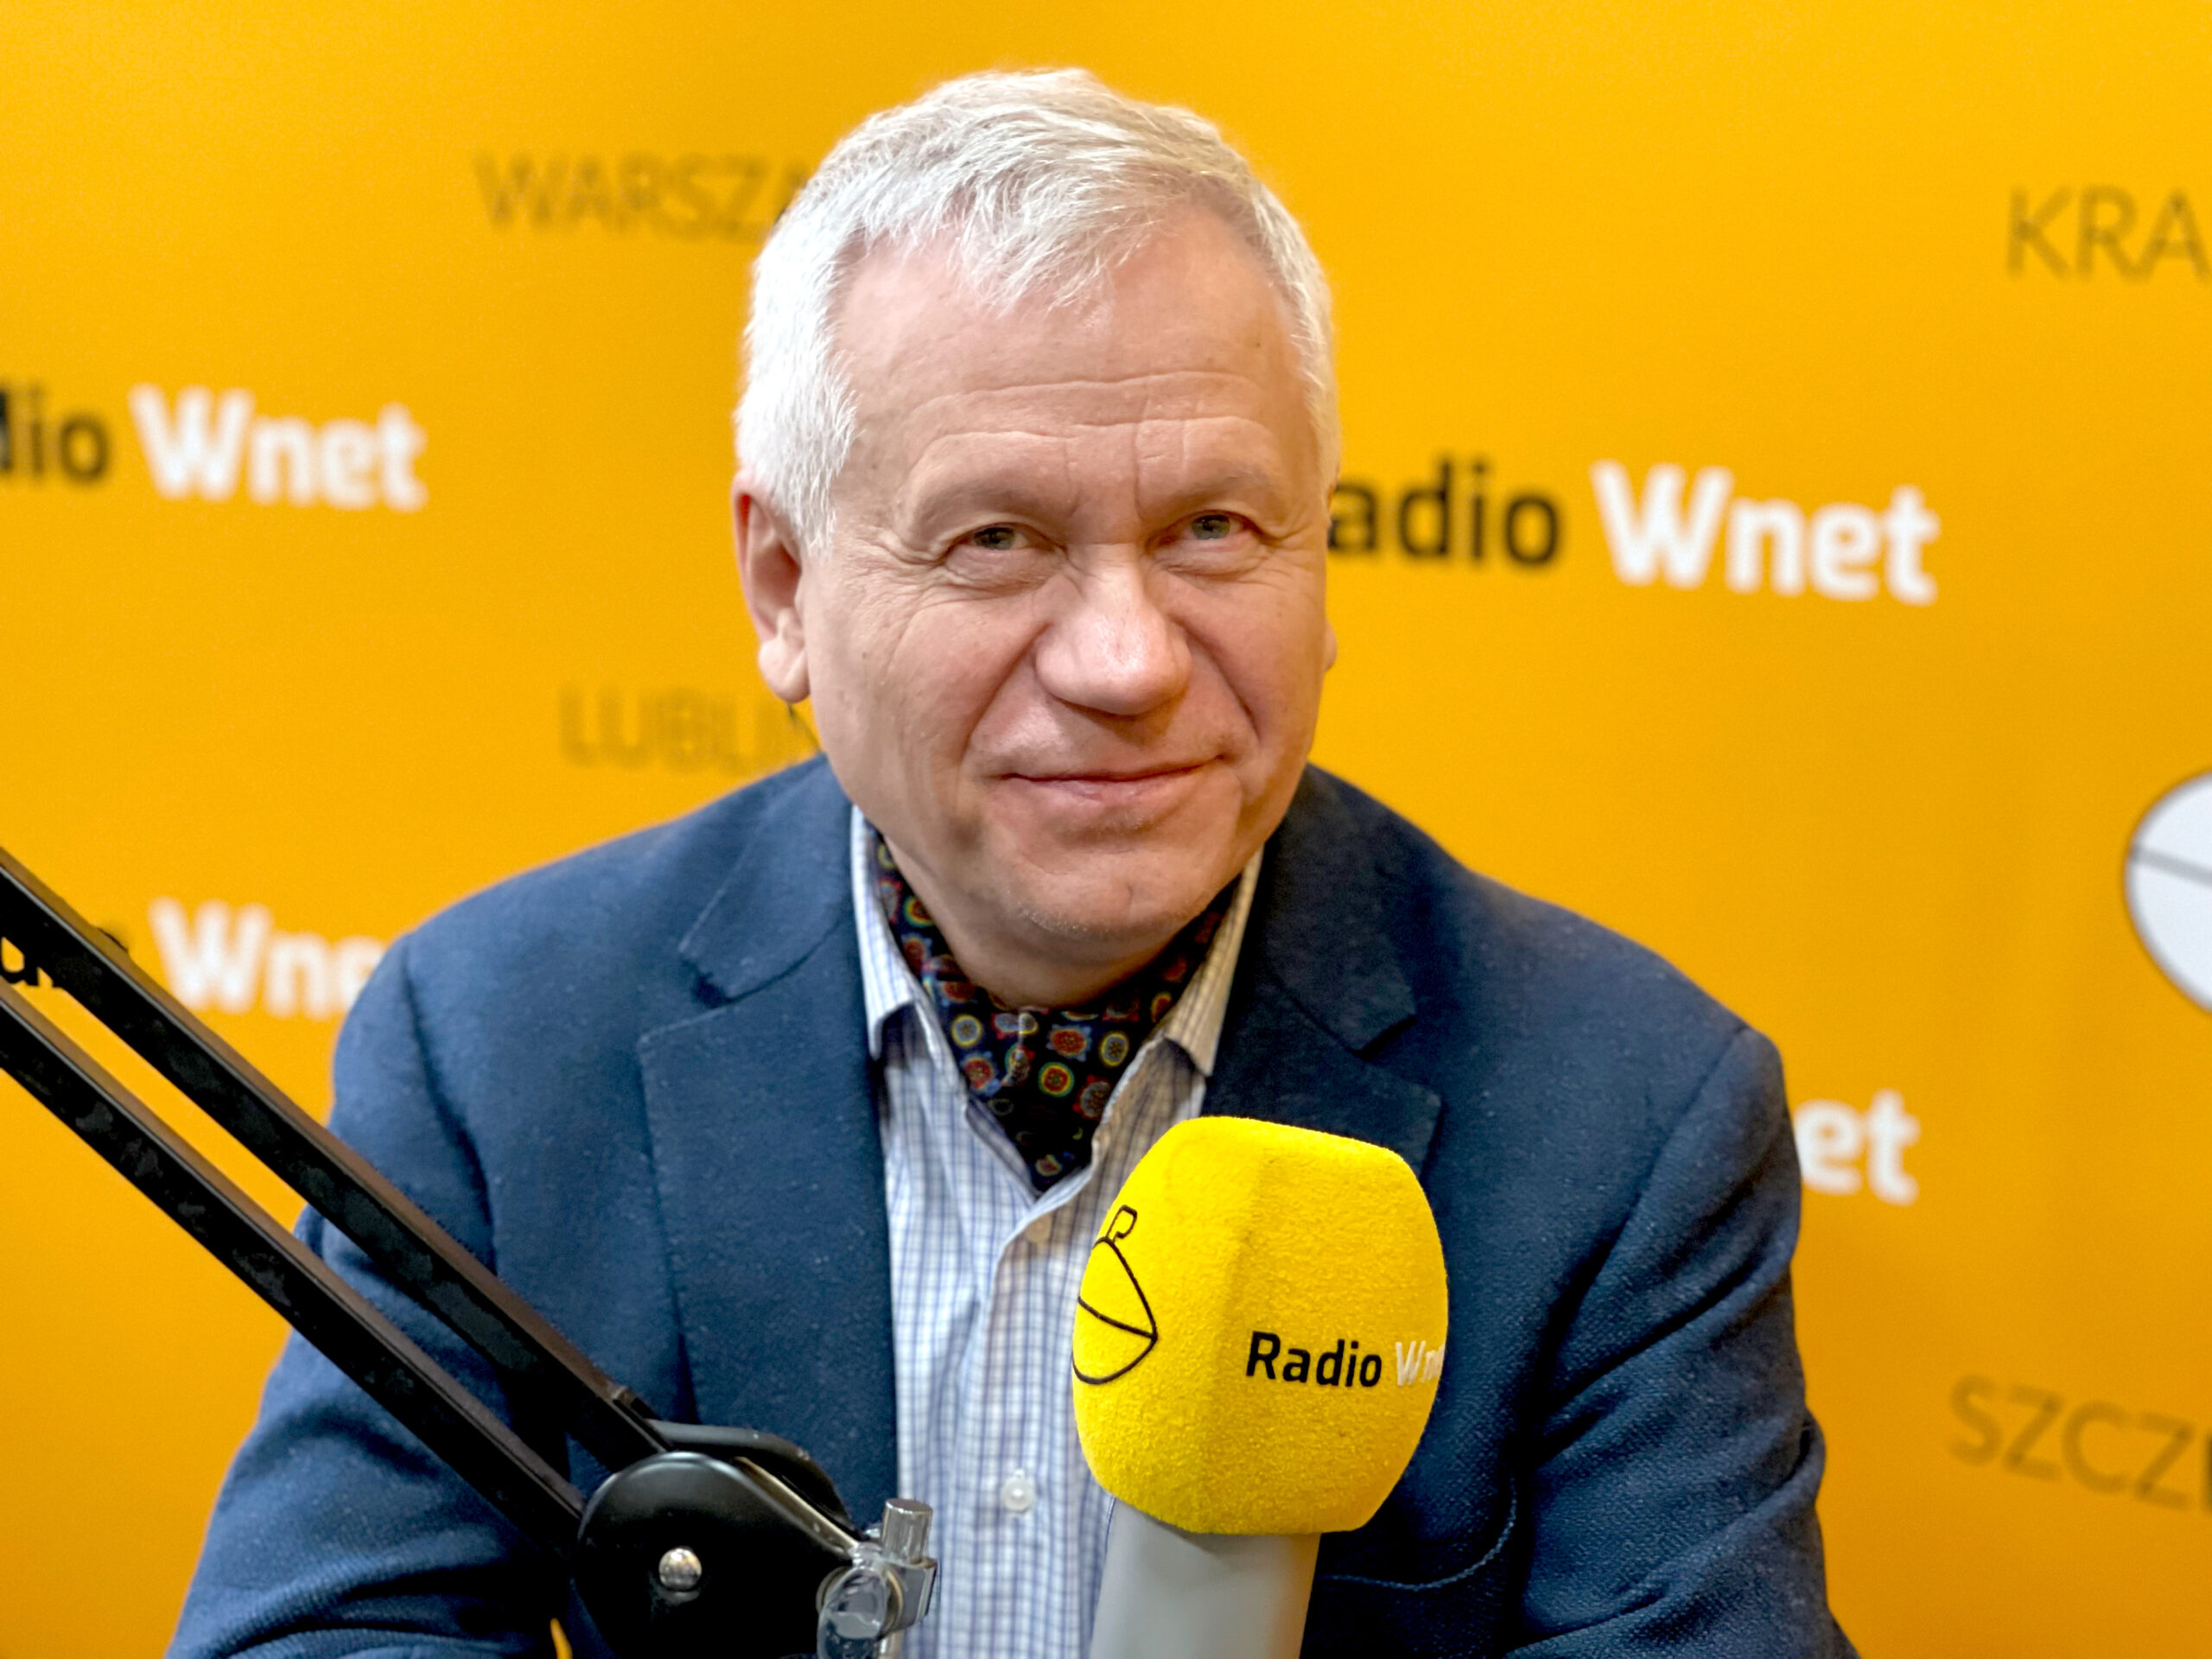 Gościem Poranka Wnet jest Marek Jurek, były Marszałek Sejmu RP, pisarz i publicysta.